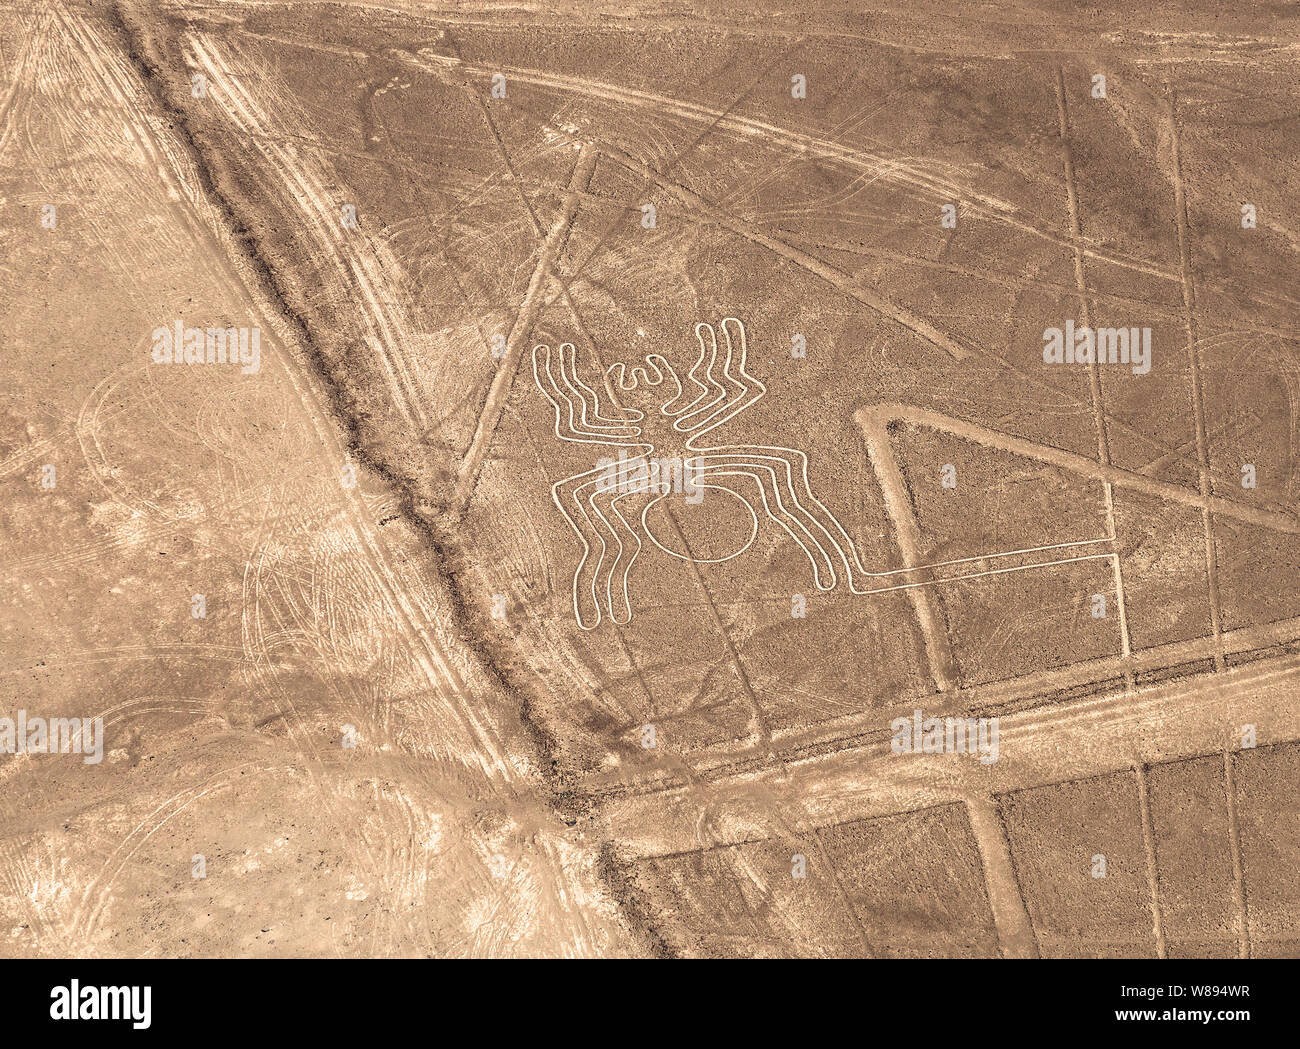 Vue aérienne de l'araignée géoglyphe dessin dans le désert côtier péruvien connu sous le nom de la mystérieuse de Nazca Nazca au Pérou, près de la ville. Banque D'Images